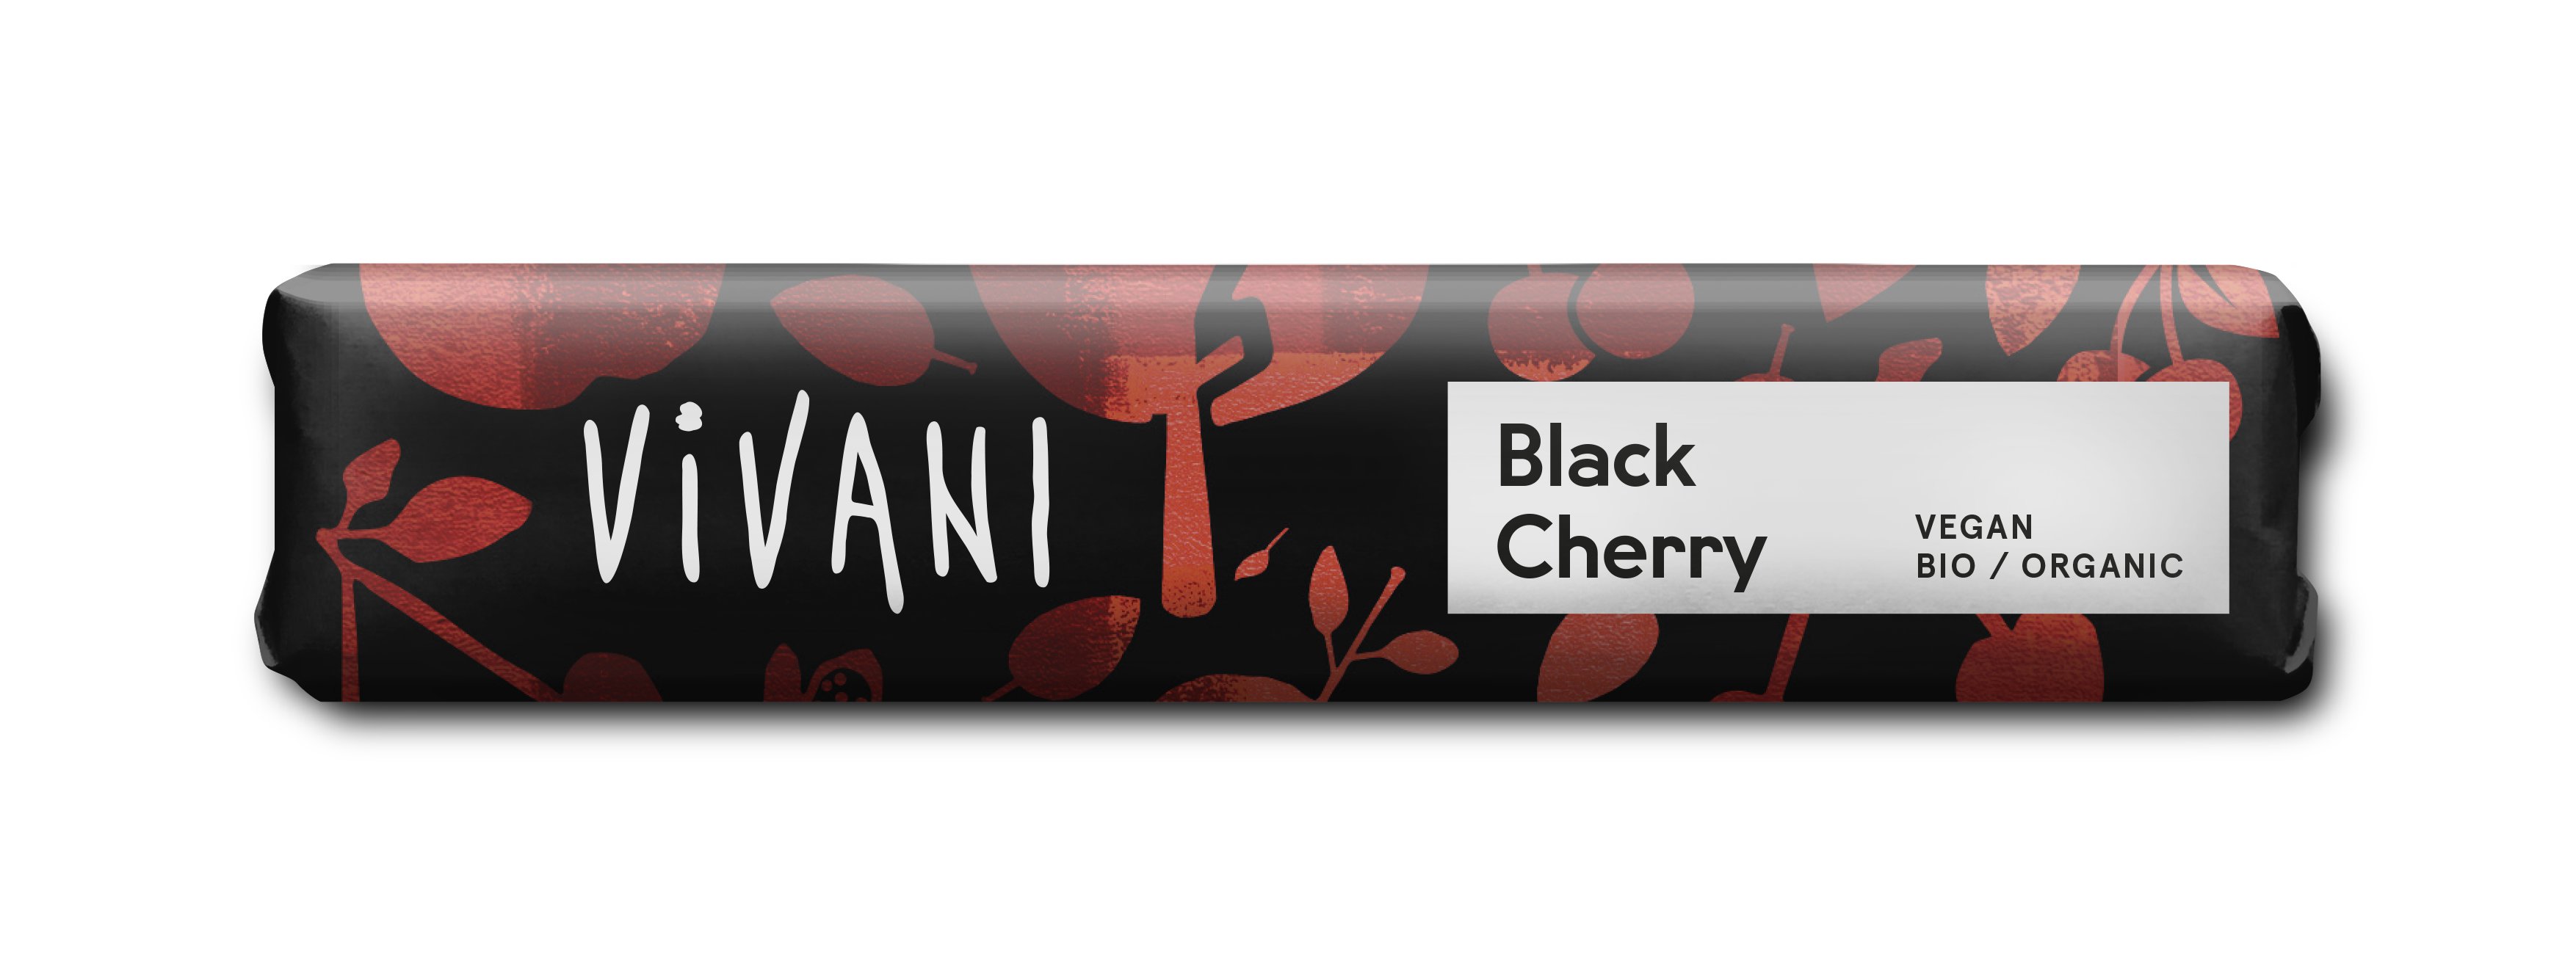 Vivani Black Cherry Schokoriegel 35 g